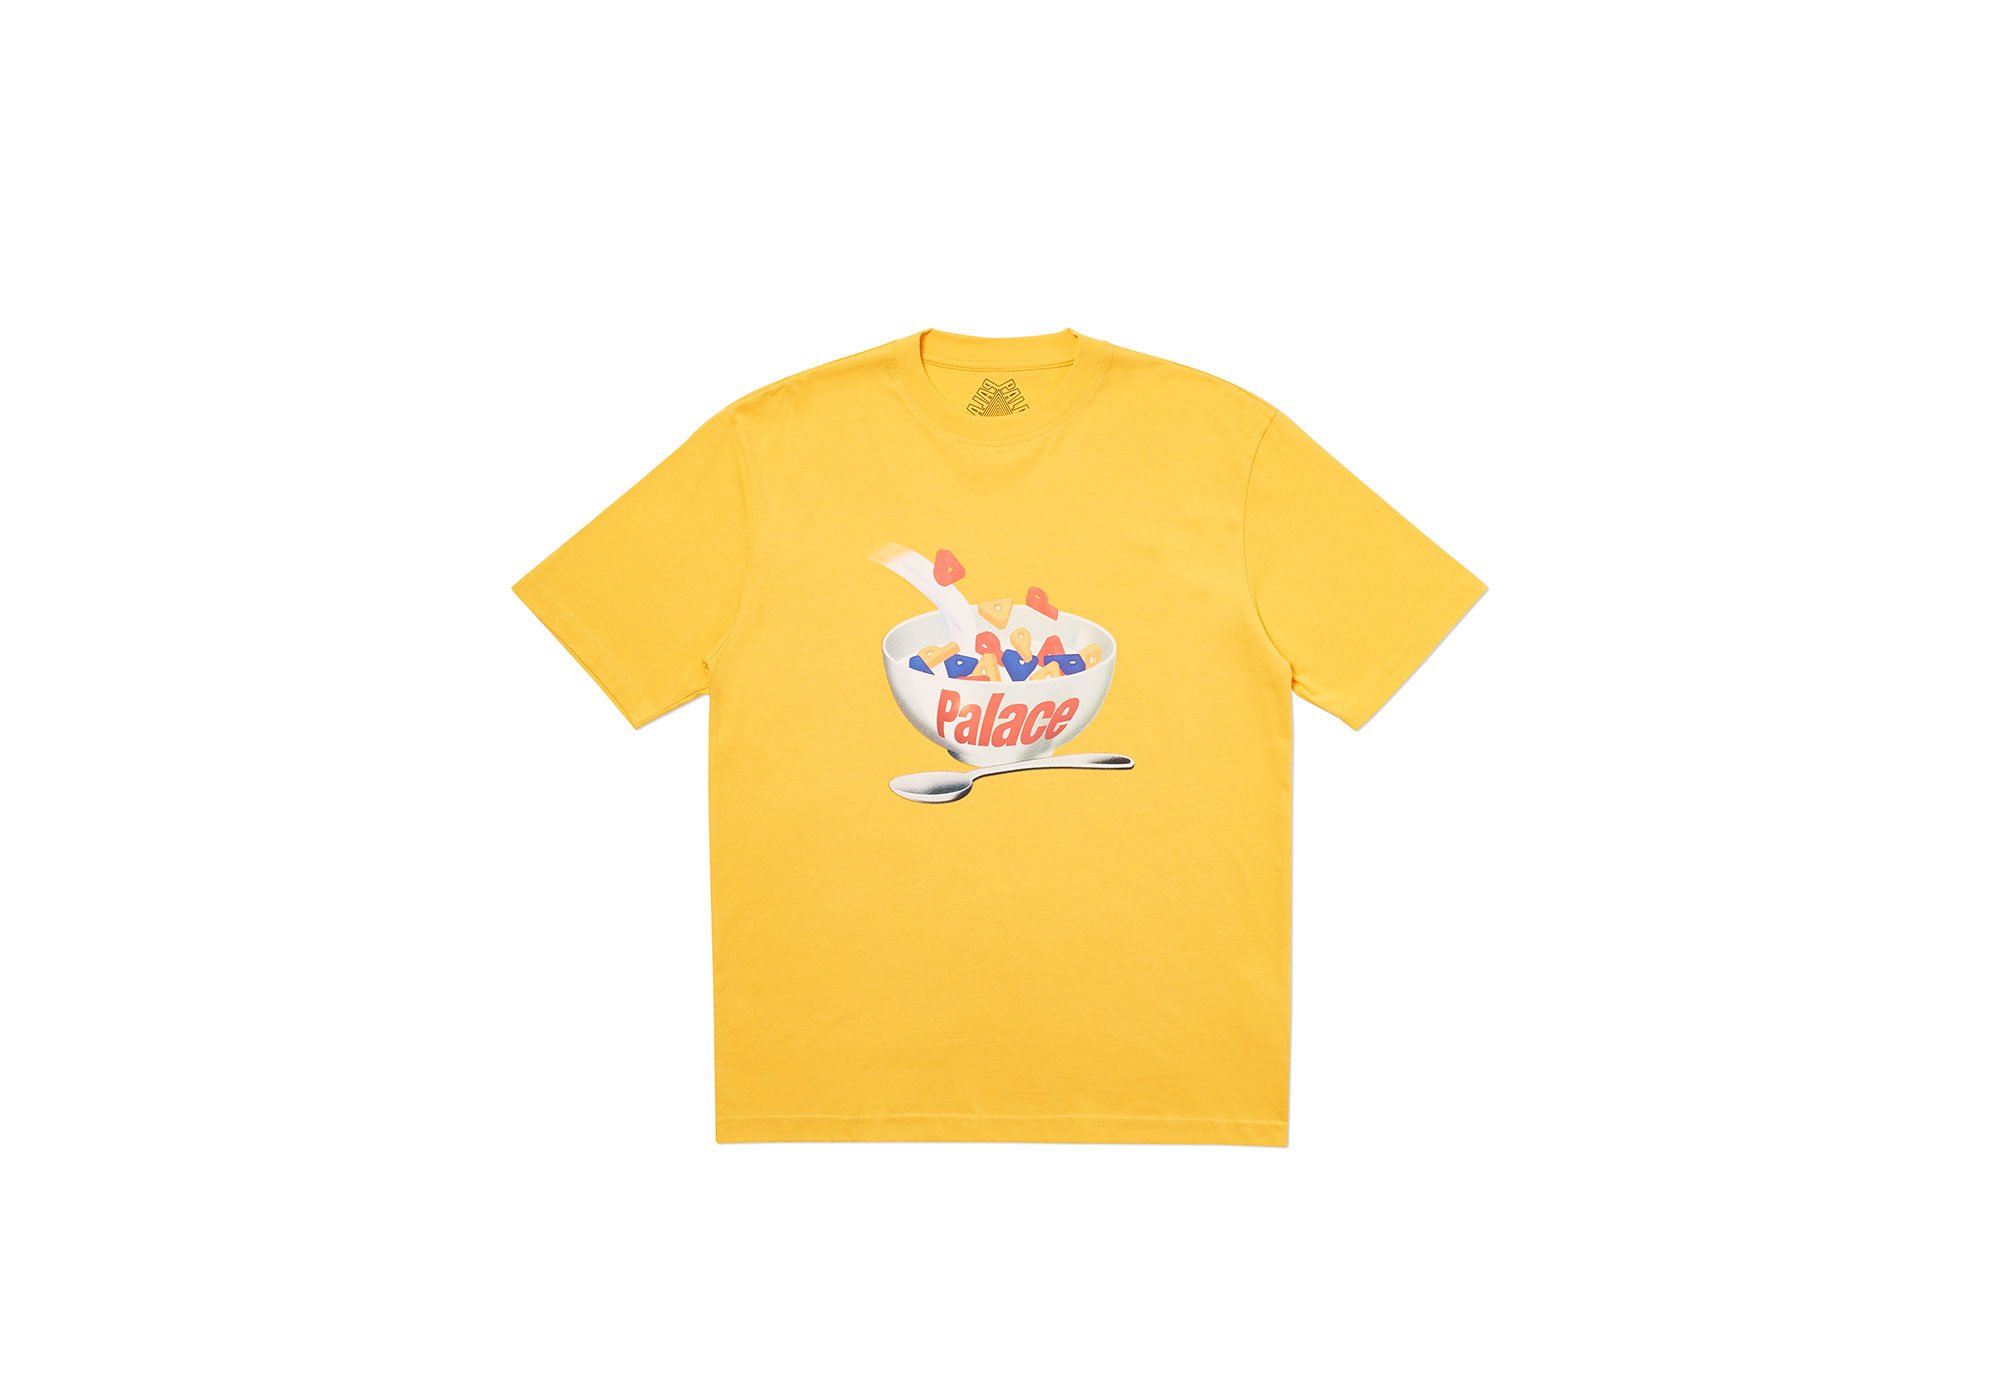 Palace Palace Charms T-Shirt Yellow